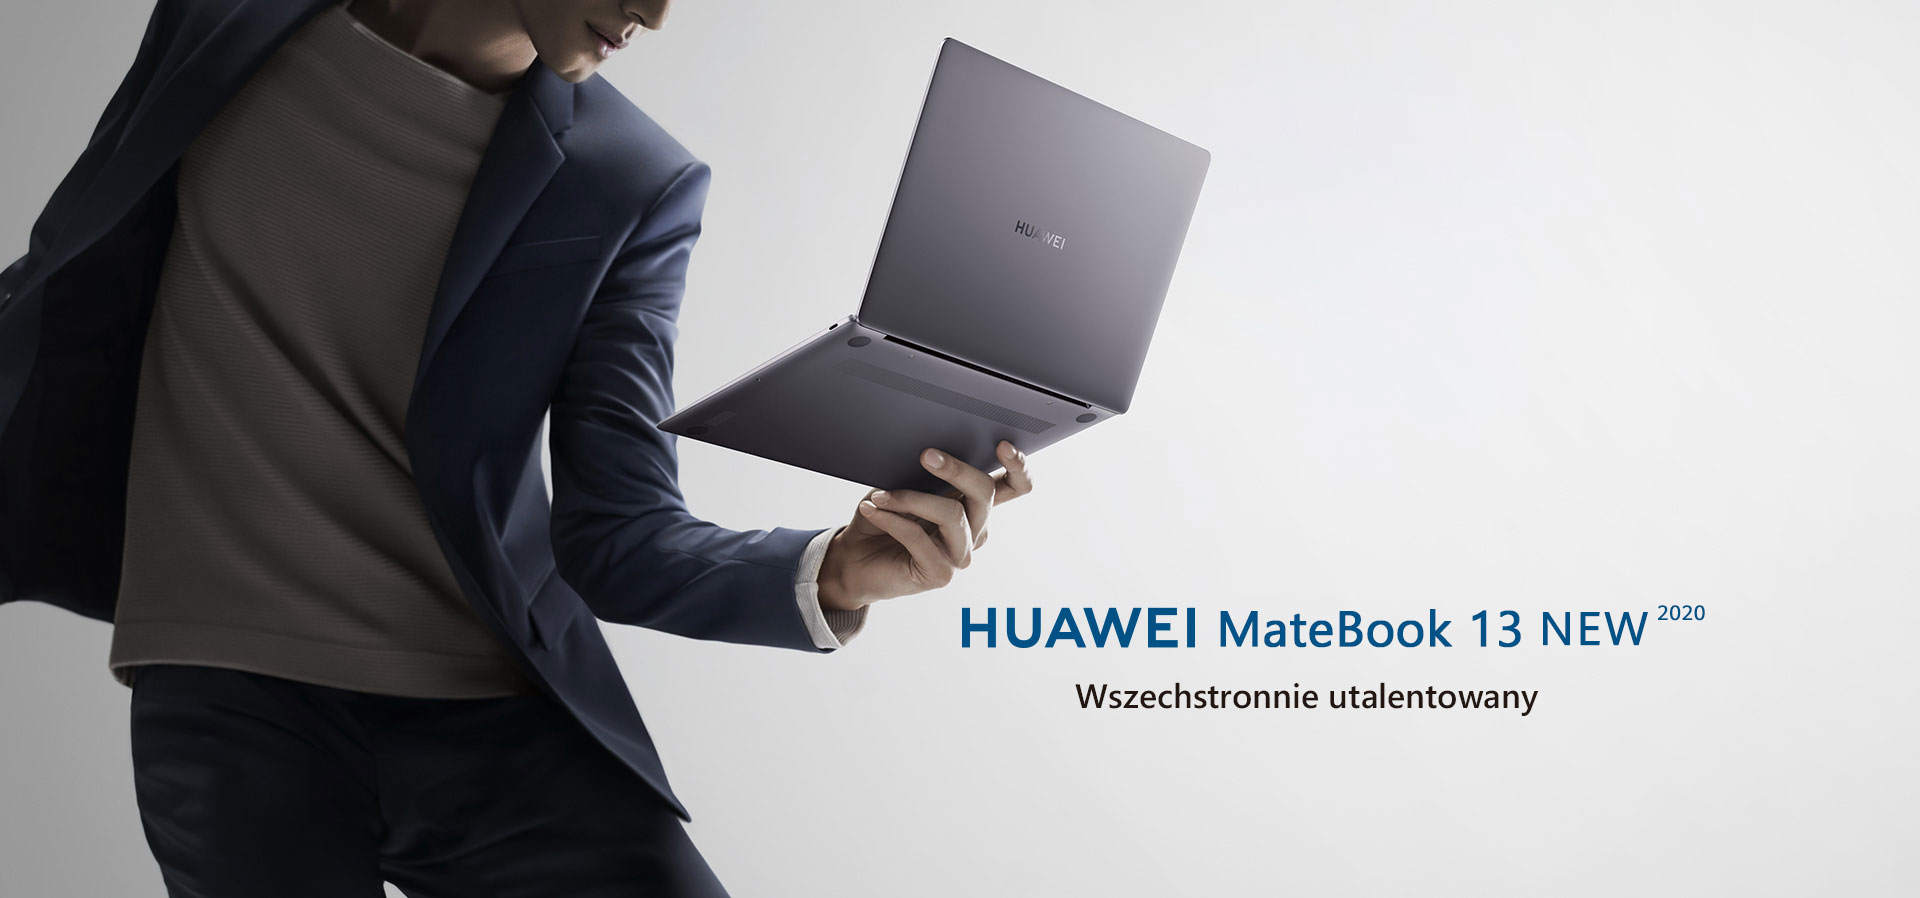 Huawei MateBook 13 2020 laptop